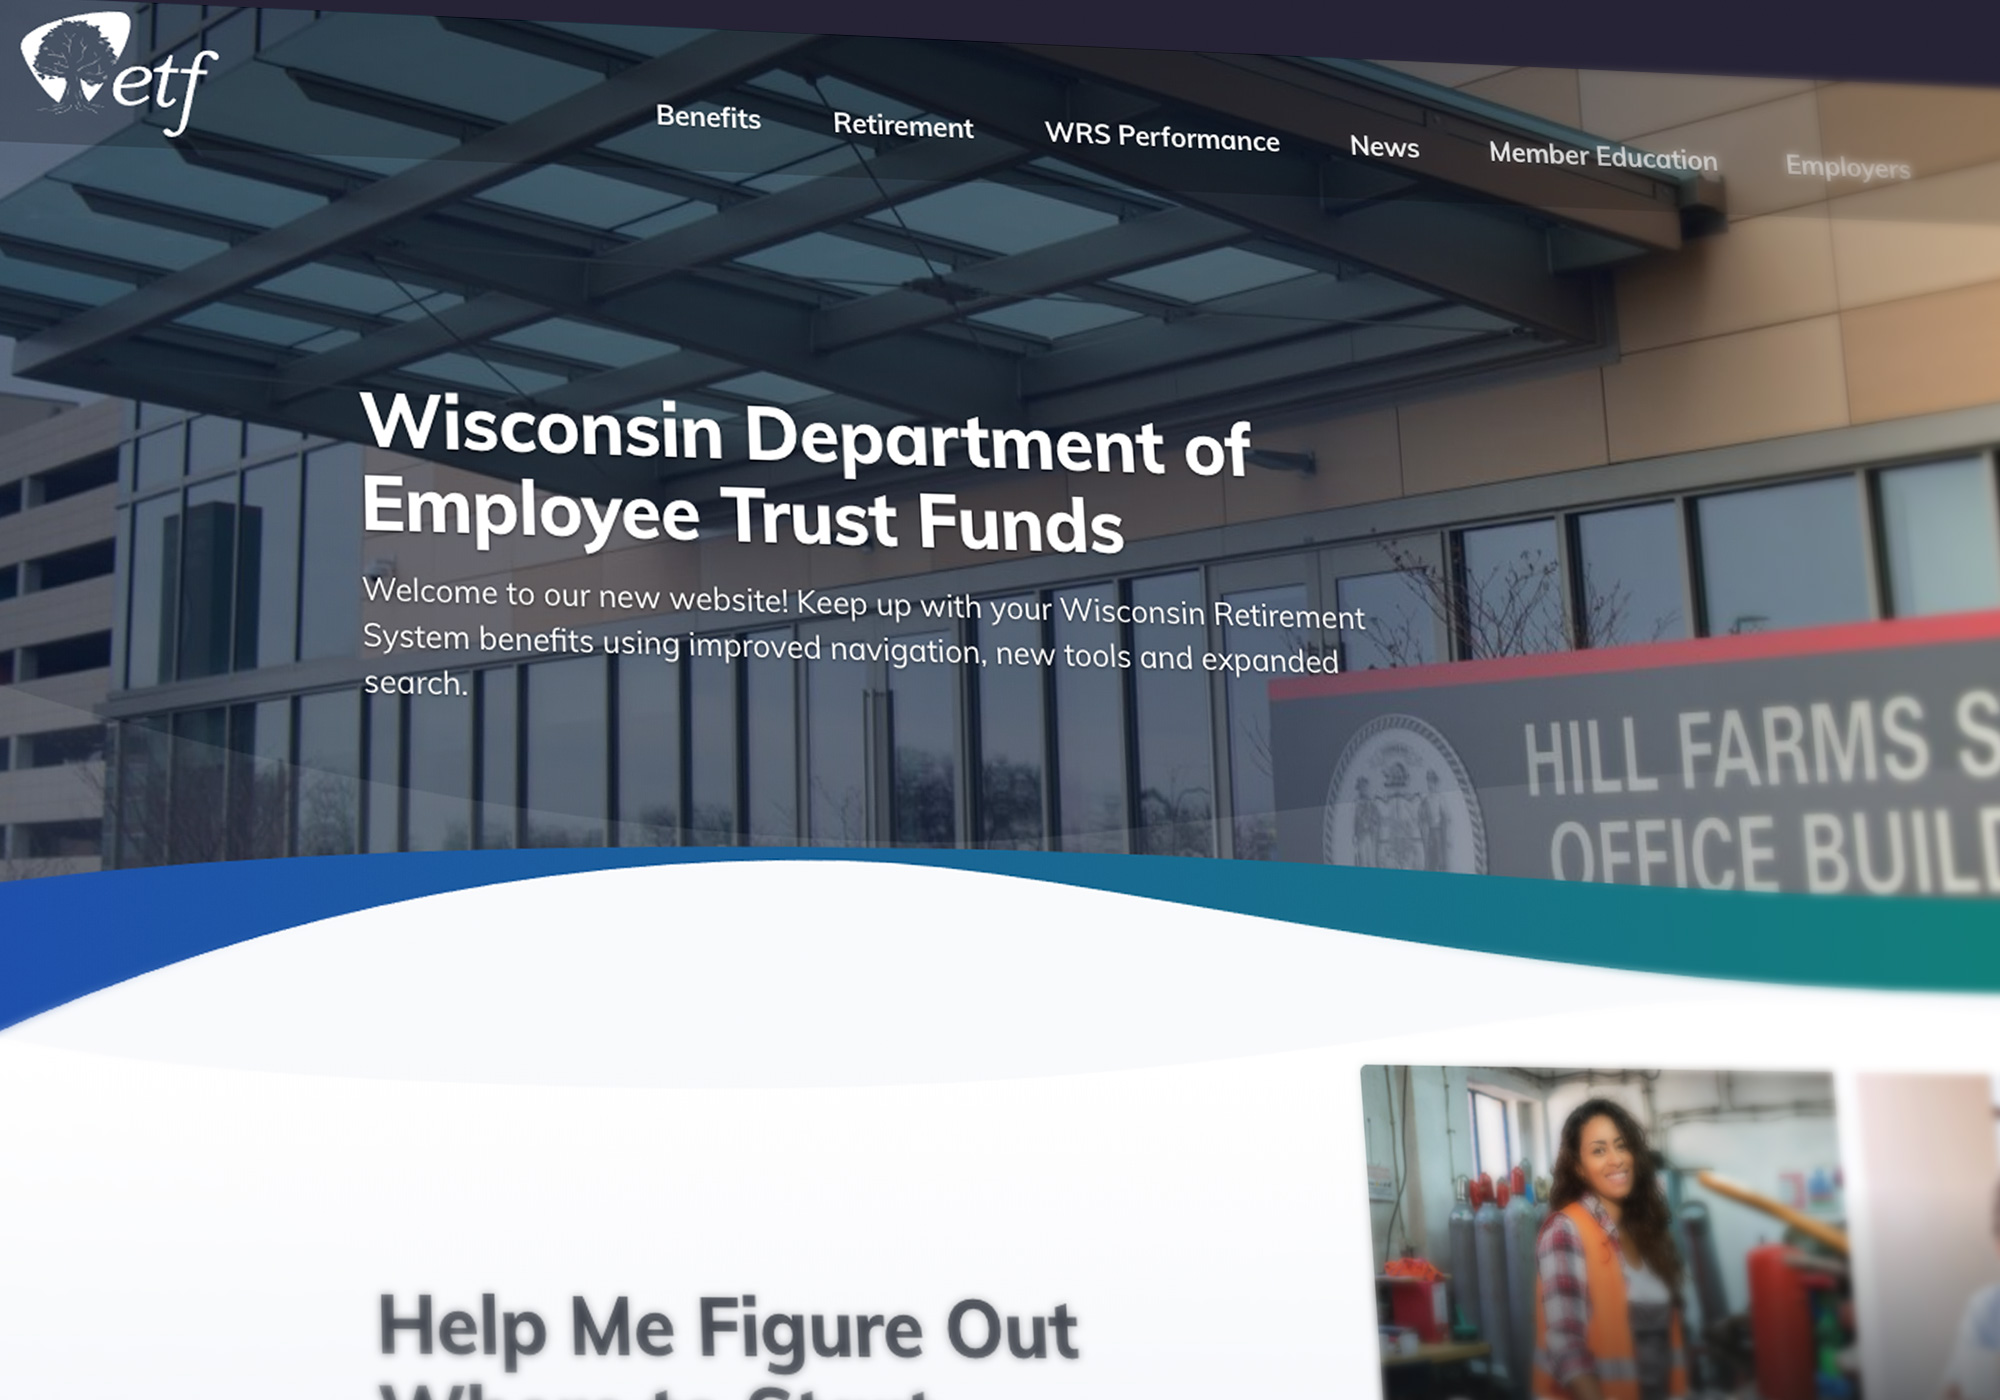 Wisconsin Department of Employee Trust Funds website